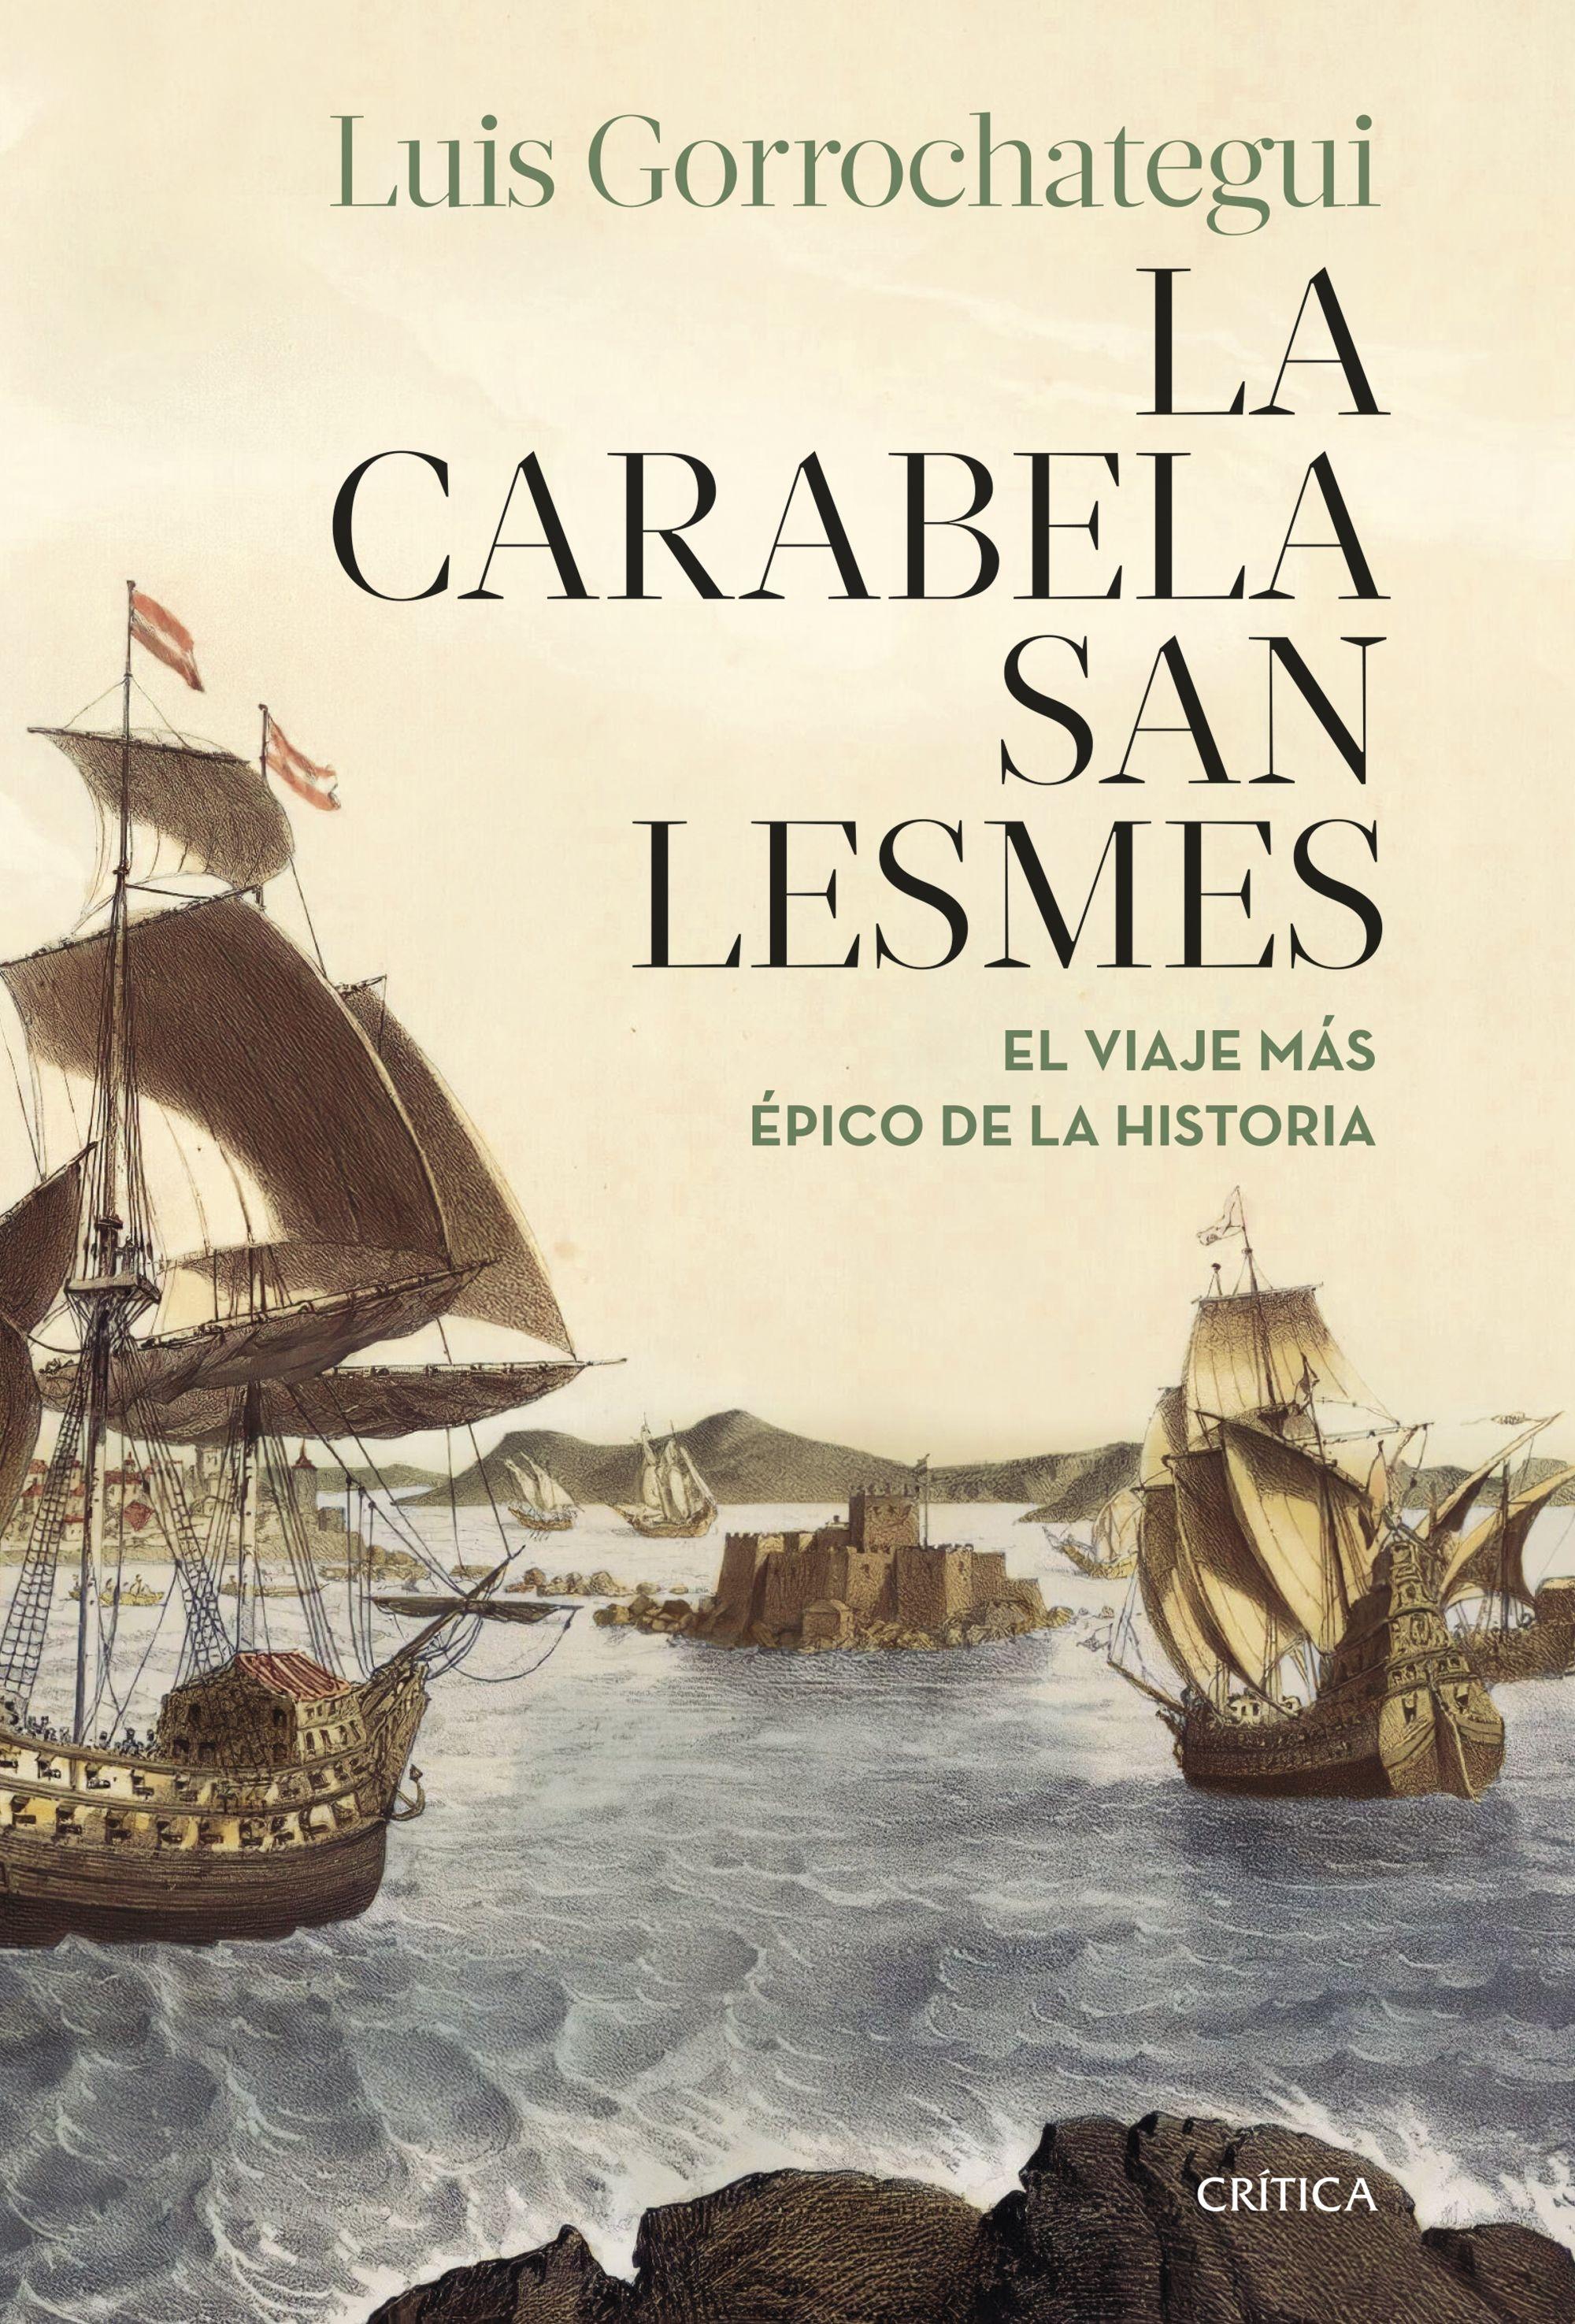 Carabela San Lesmes, La  "El viaje más épico de la historia"